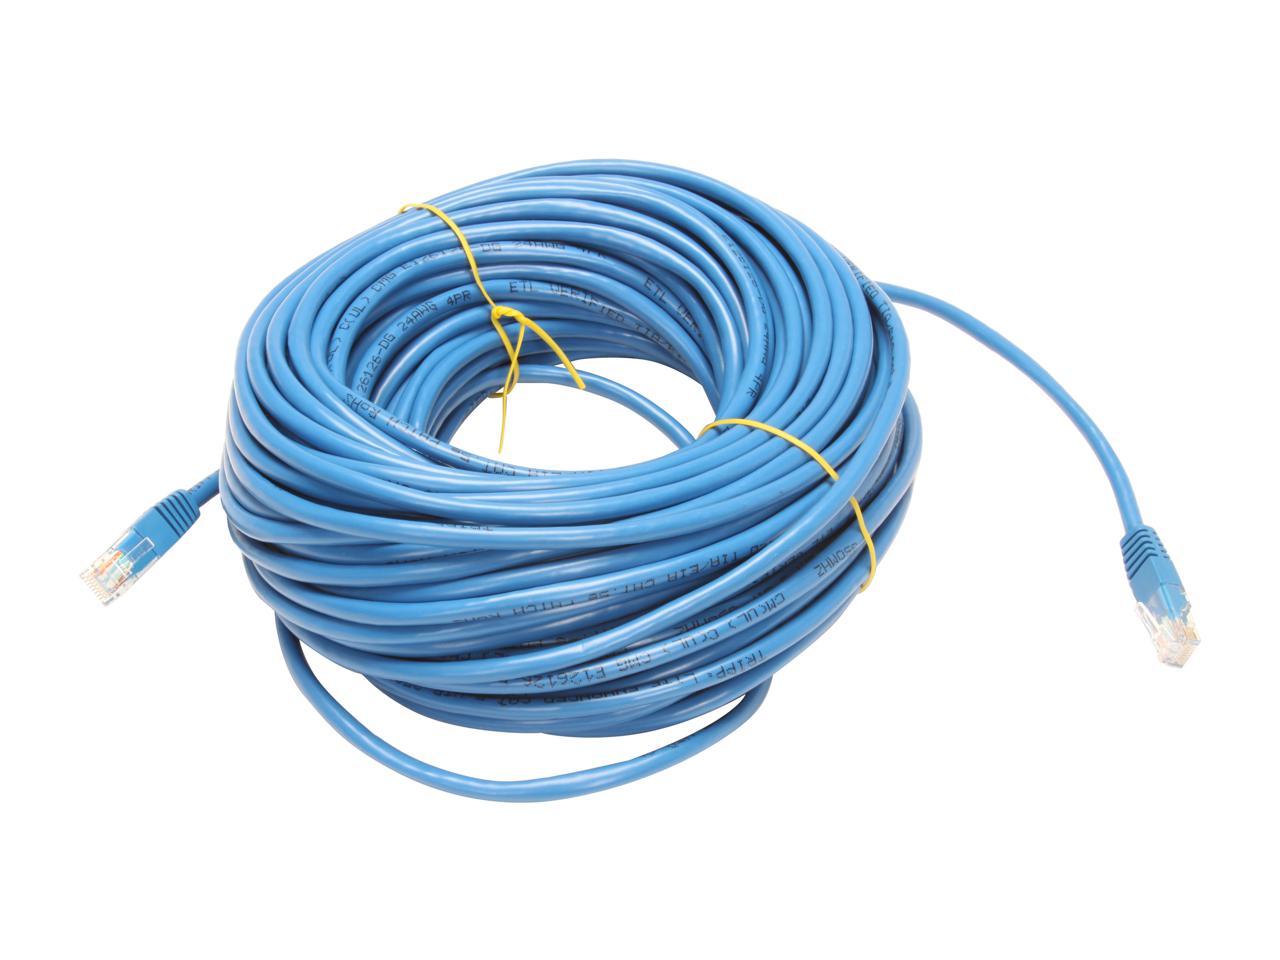 TRIPP LITE N002-100-BL 100 ft. Cat 5E Blue Cat5e 350MHz Molded Patch Cable